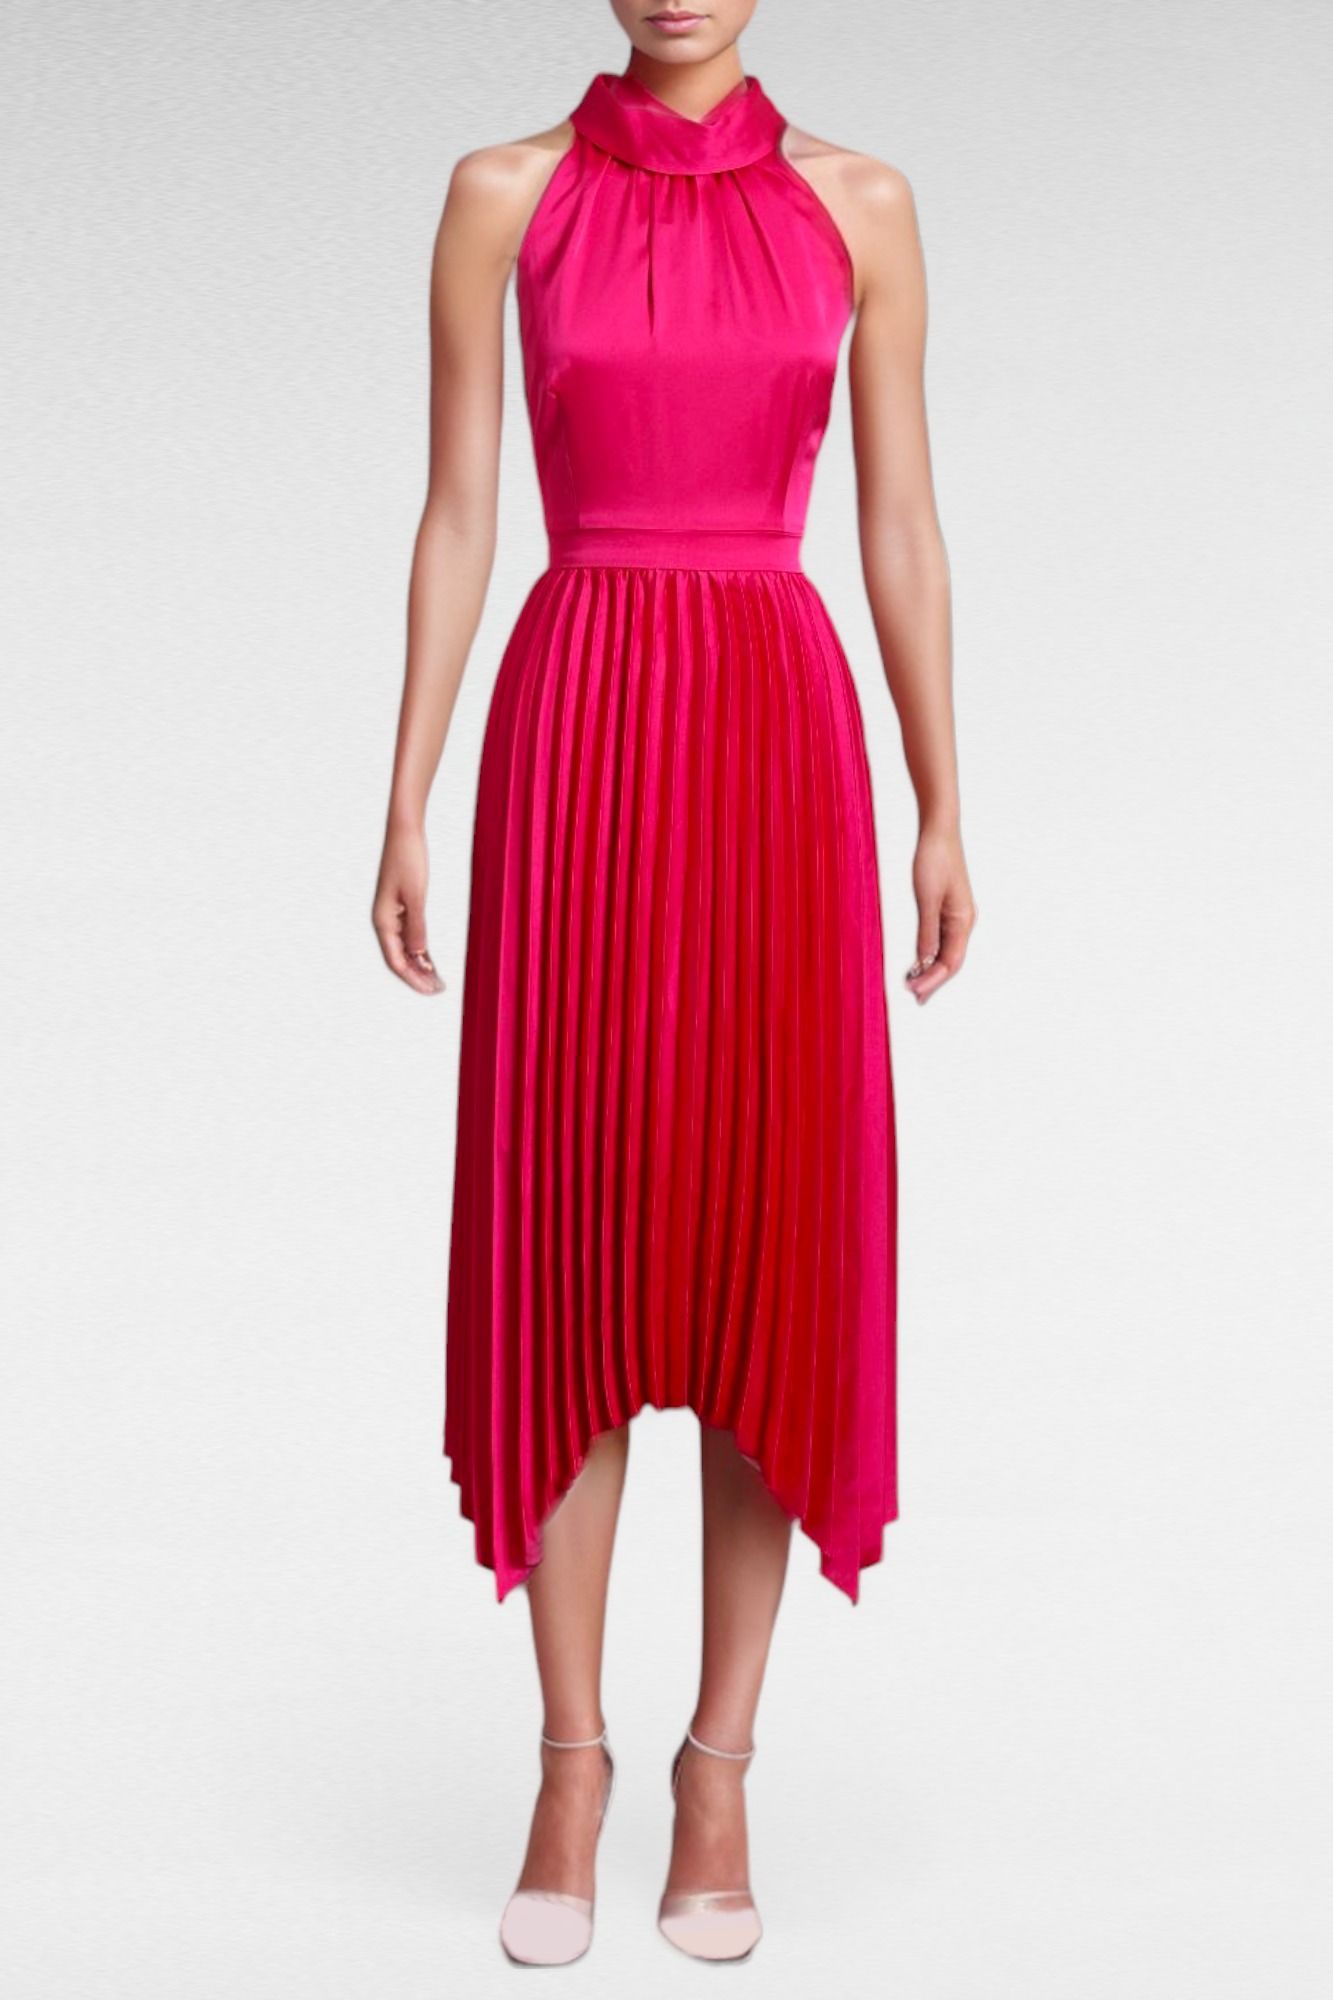 Portmans - Hot Pink Sleeveless Cowl Neck Dress